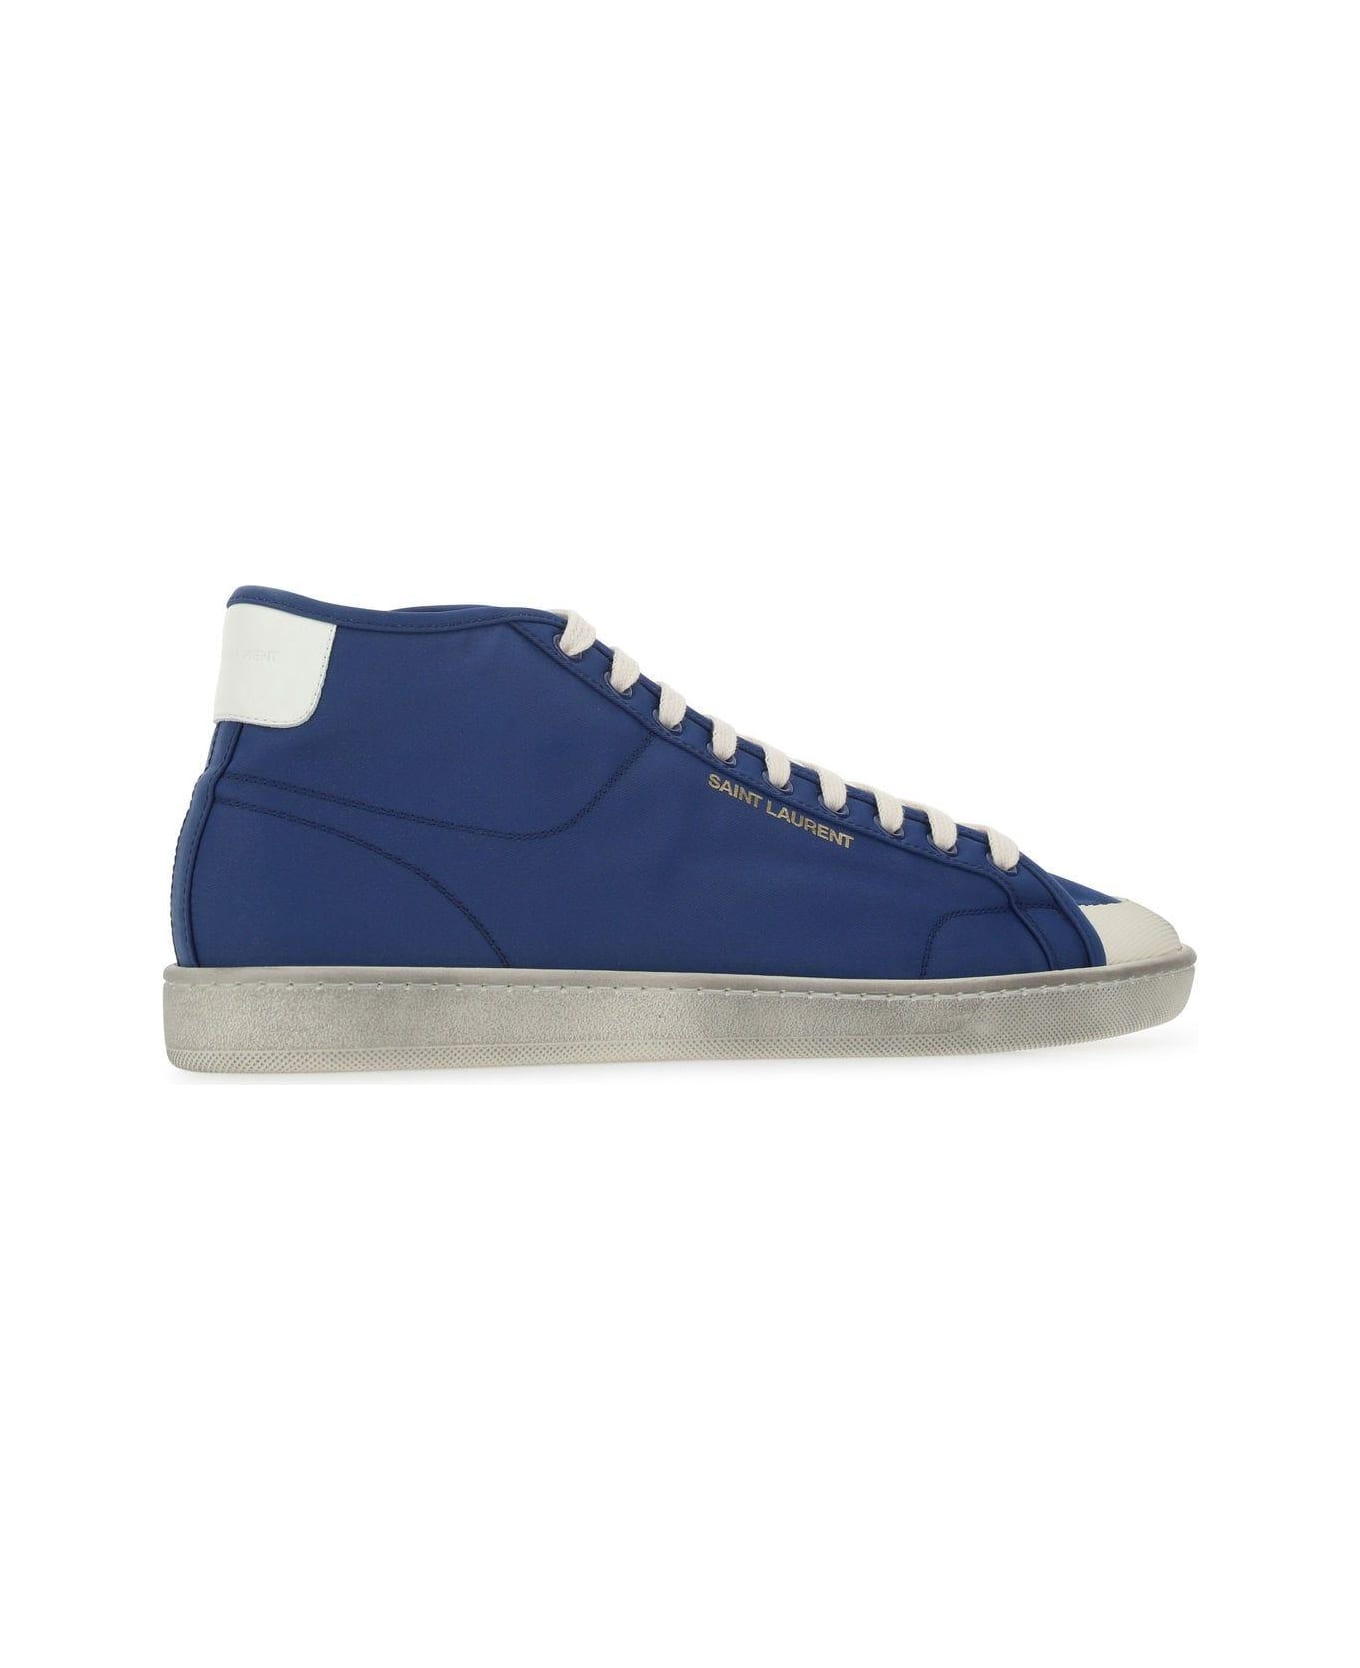 Saint Laurent Blue Nylon Sl/39 Sneakers - Blue スニーカー